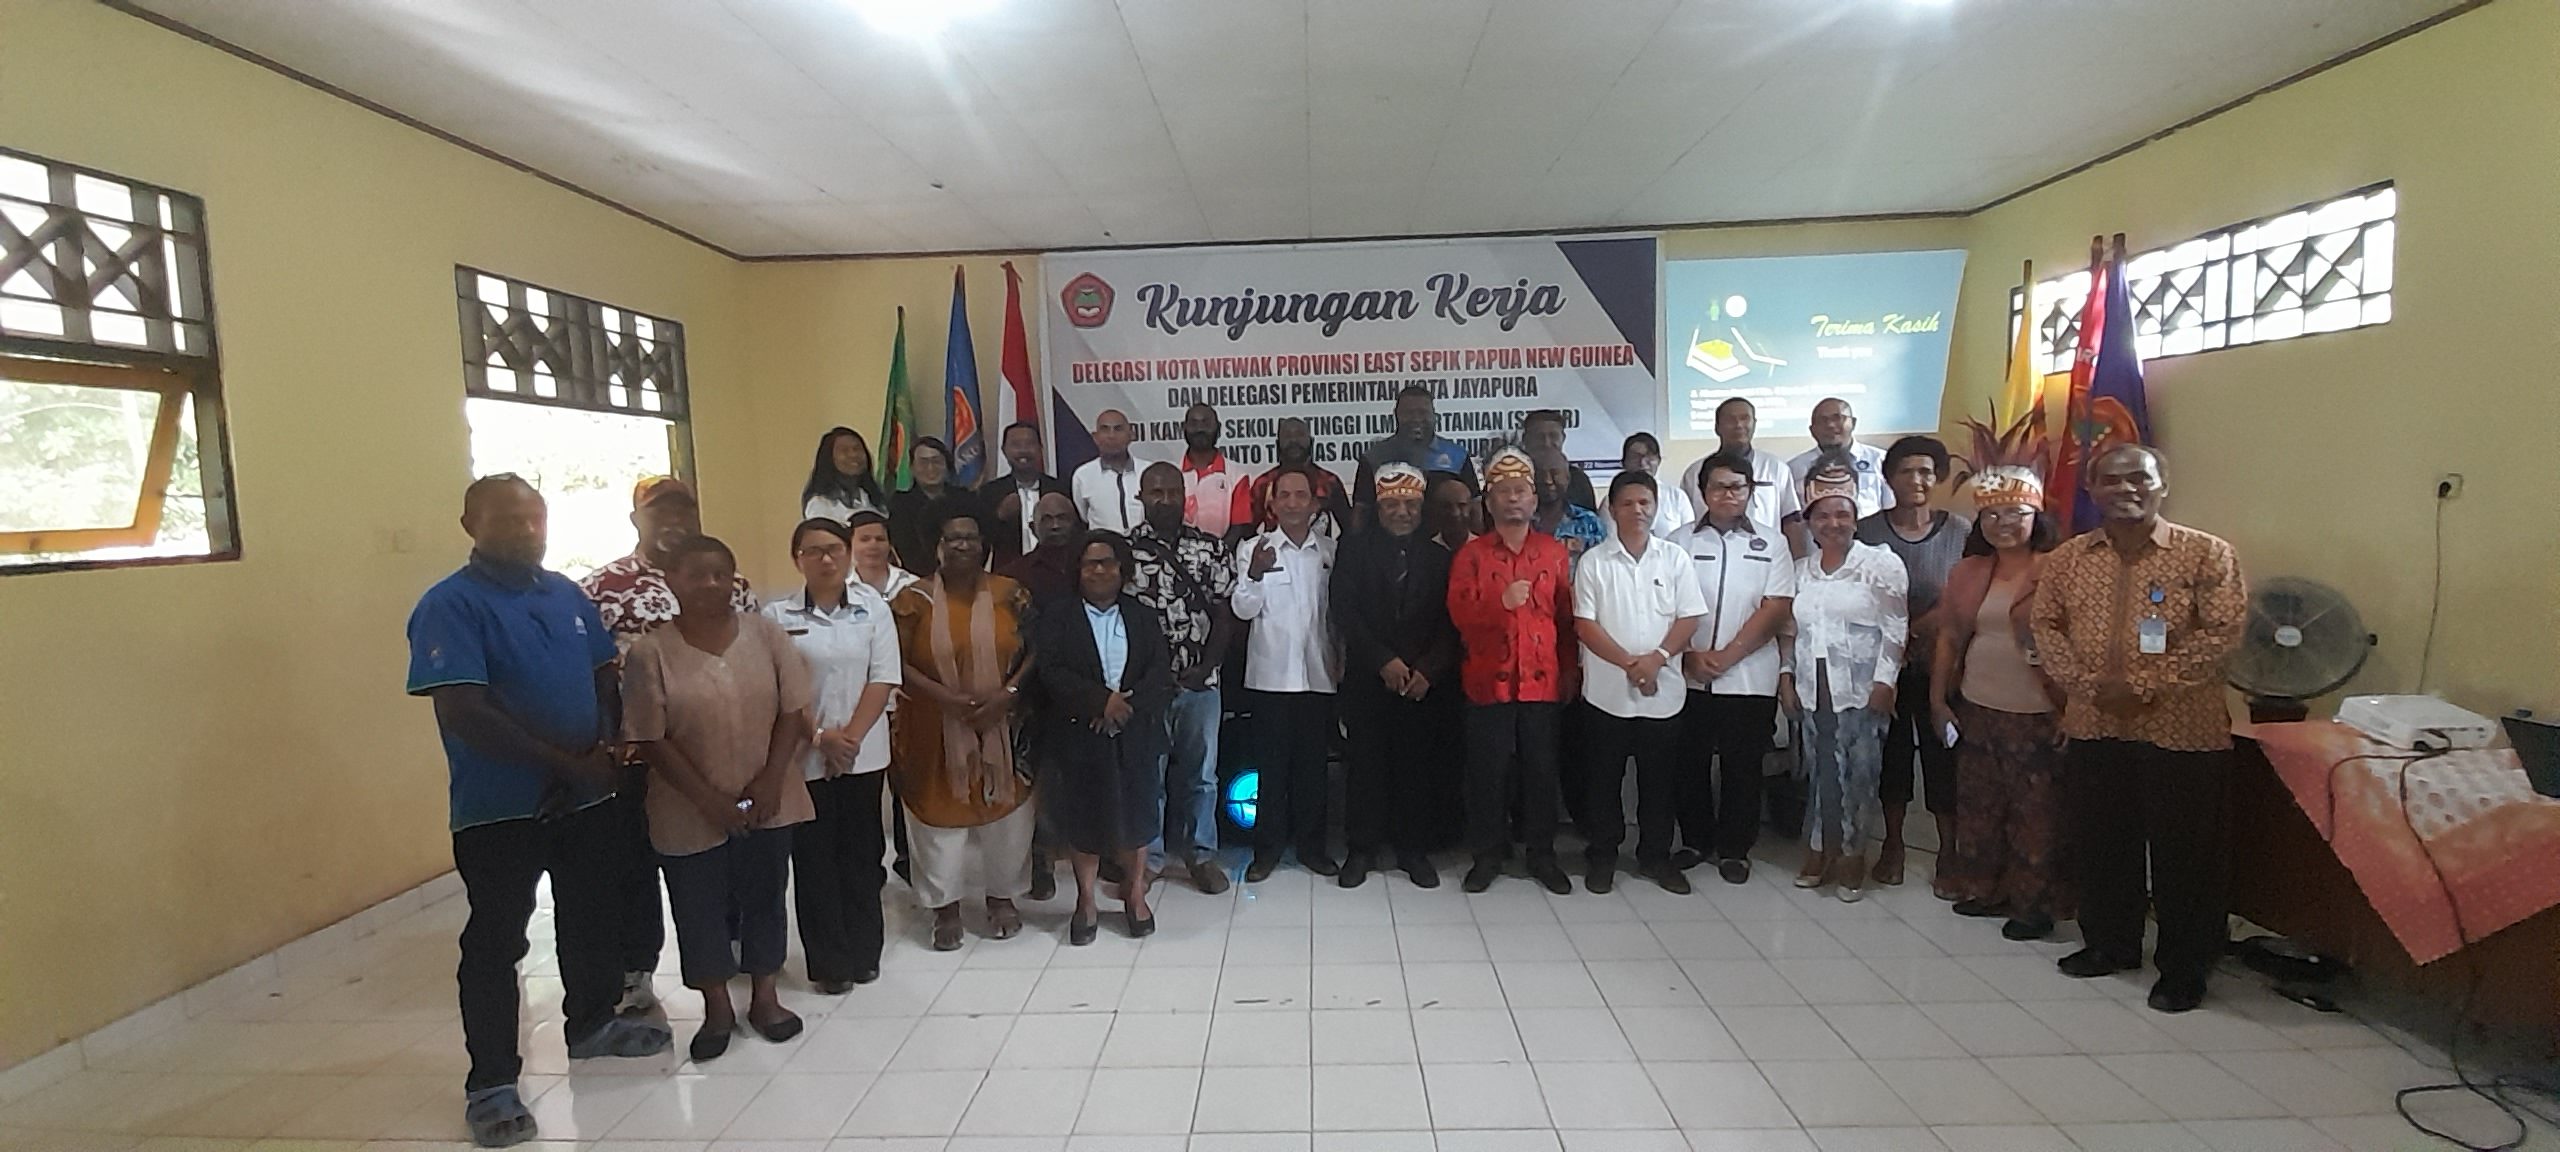 Kunjungan Delegasi Wiwek Provinsi East Sepik Papua New Guinea dan Delegasi Pemerintah Kota Jayapura